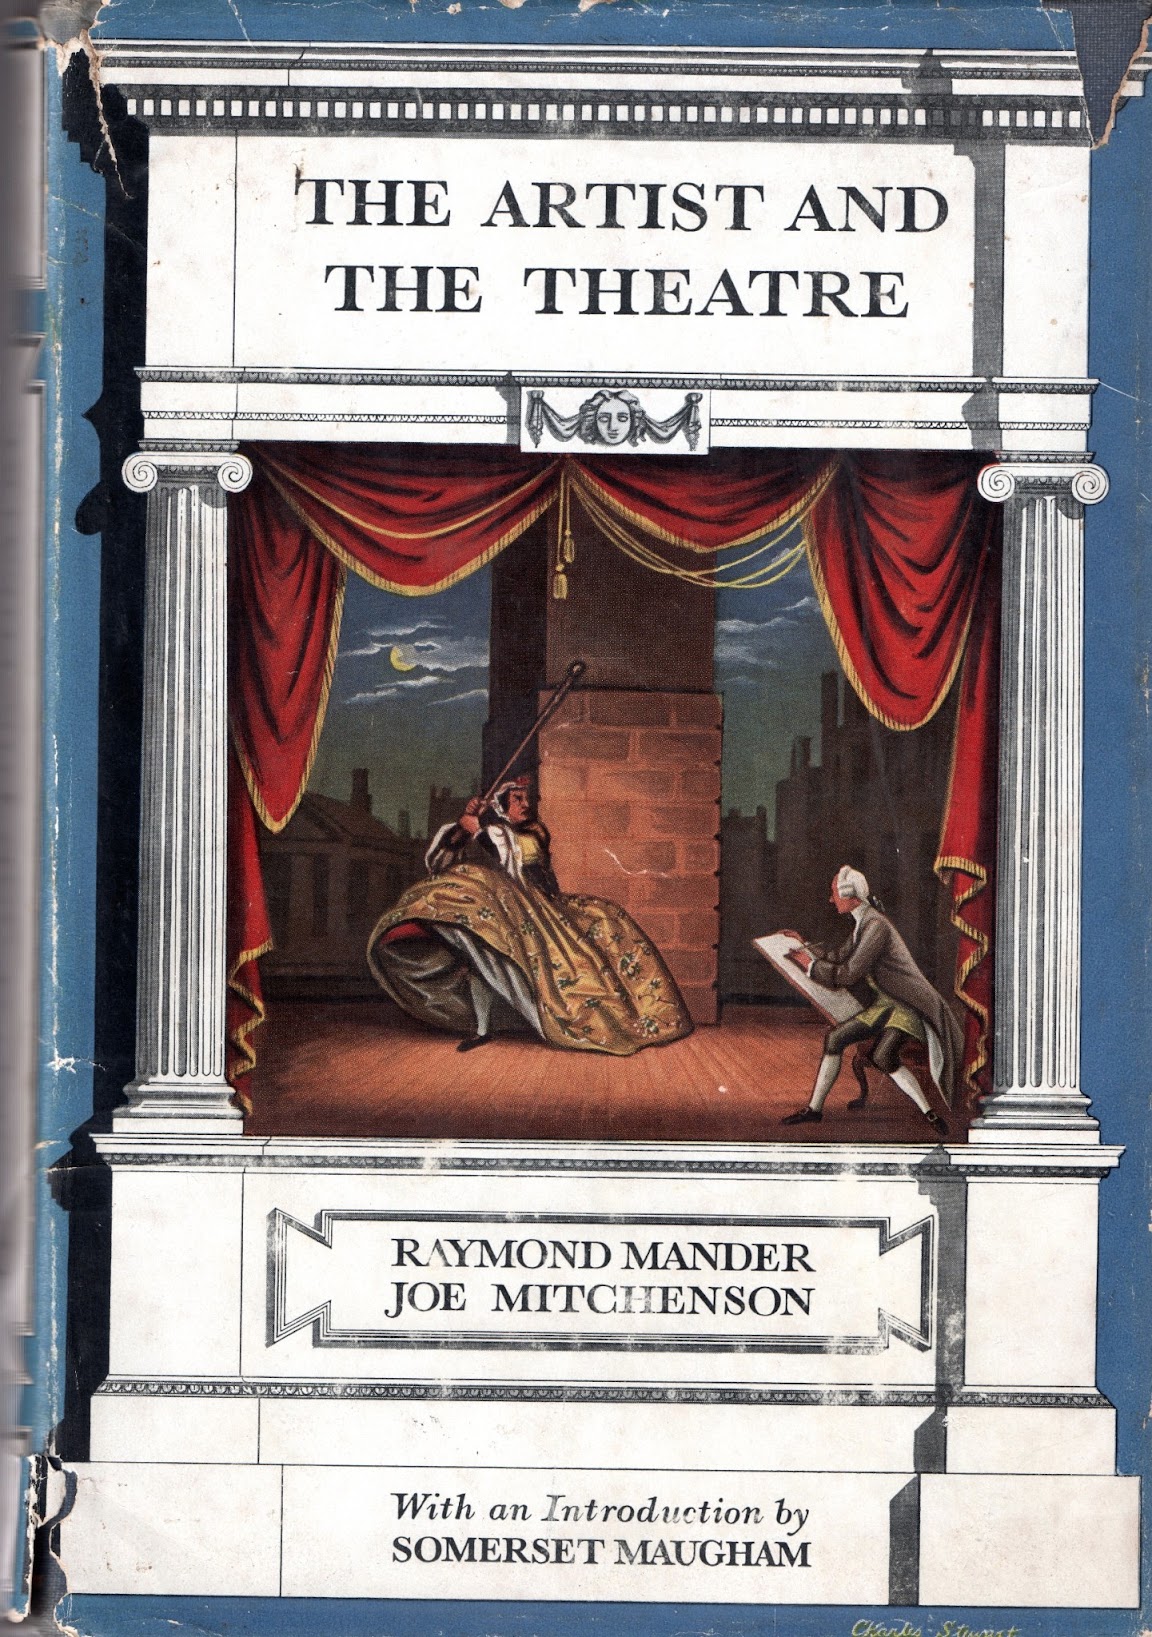 Читать театр сомерсет. W.S.Maugham "Theatre". Somerset Maugham Theatre пособие. Maugham, w. s. Theatre 1999. Somerset Maugham Theatre пособие для университетов.